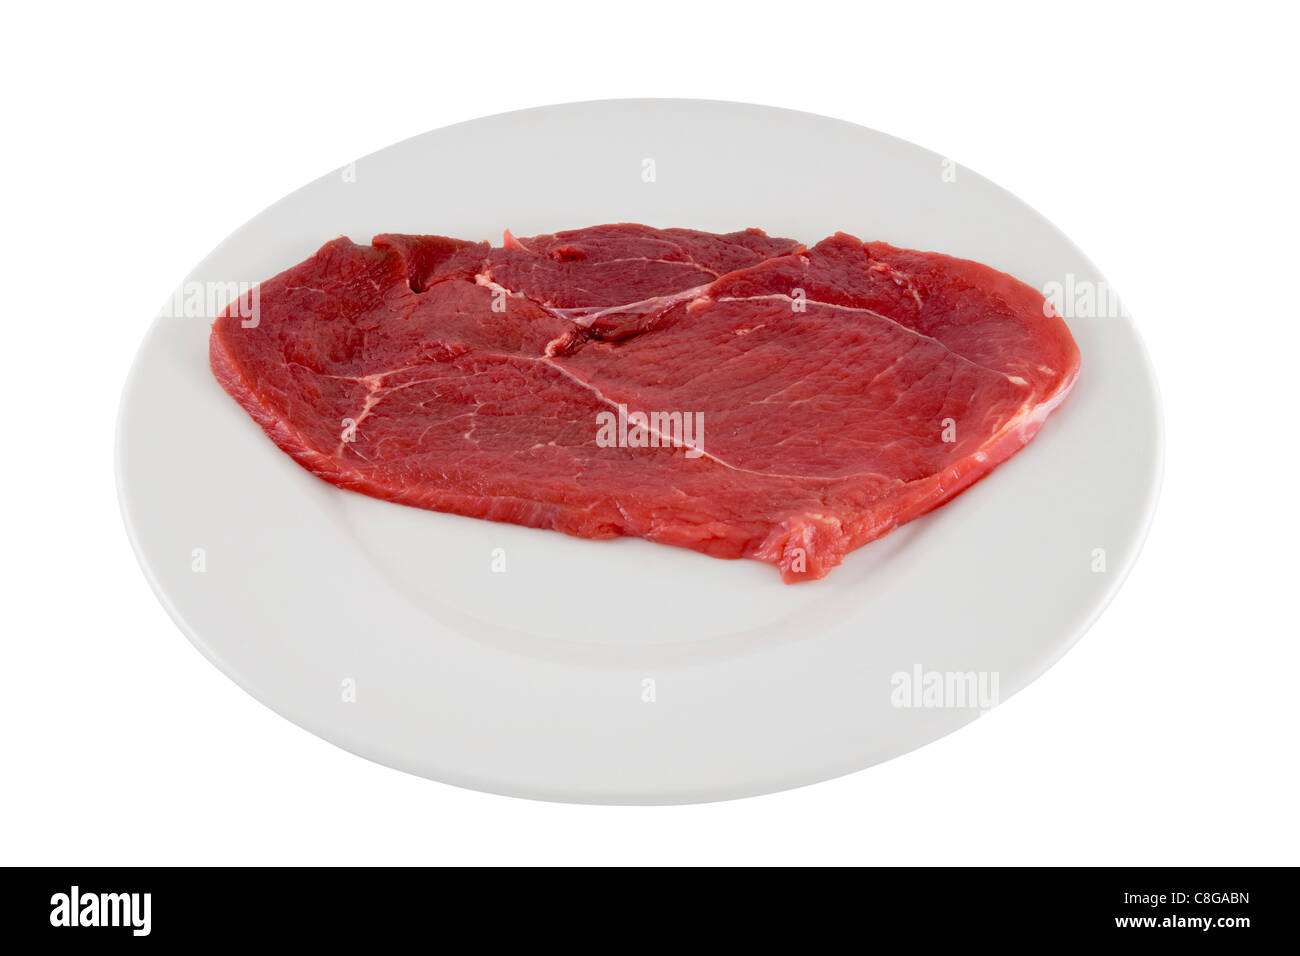 Rohes Rindfleisch Schnitzel auf weißen Teller. Bild ist isoliert auf weißem Hintergrund. Stockfoto